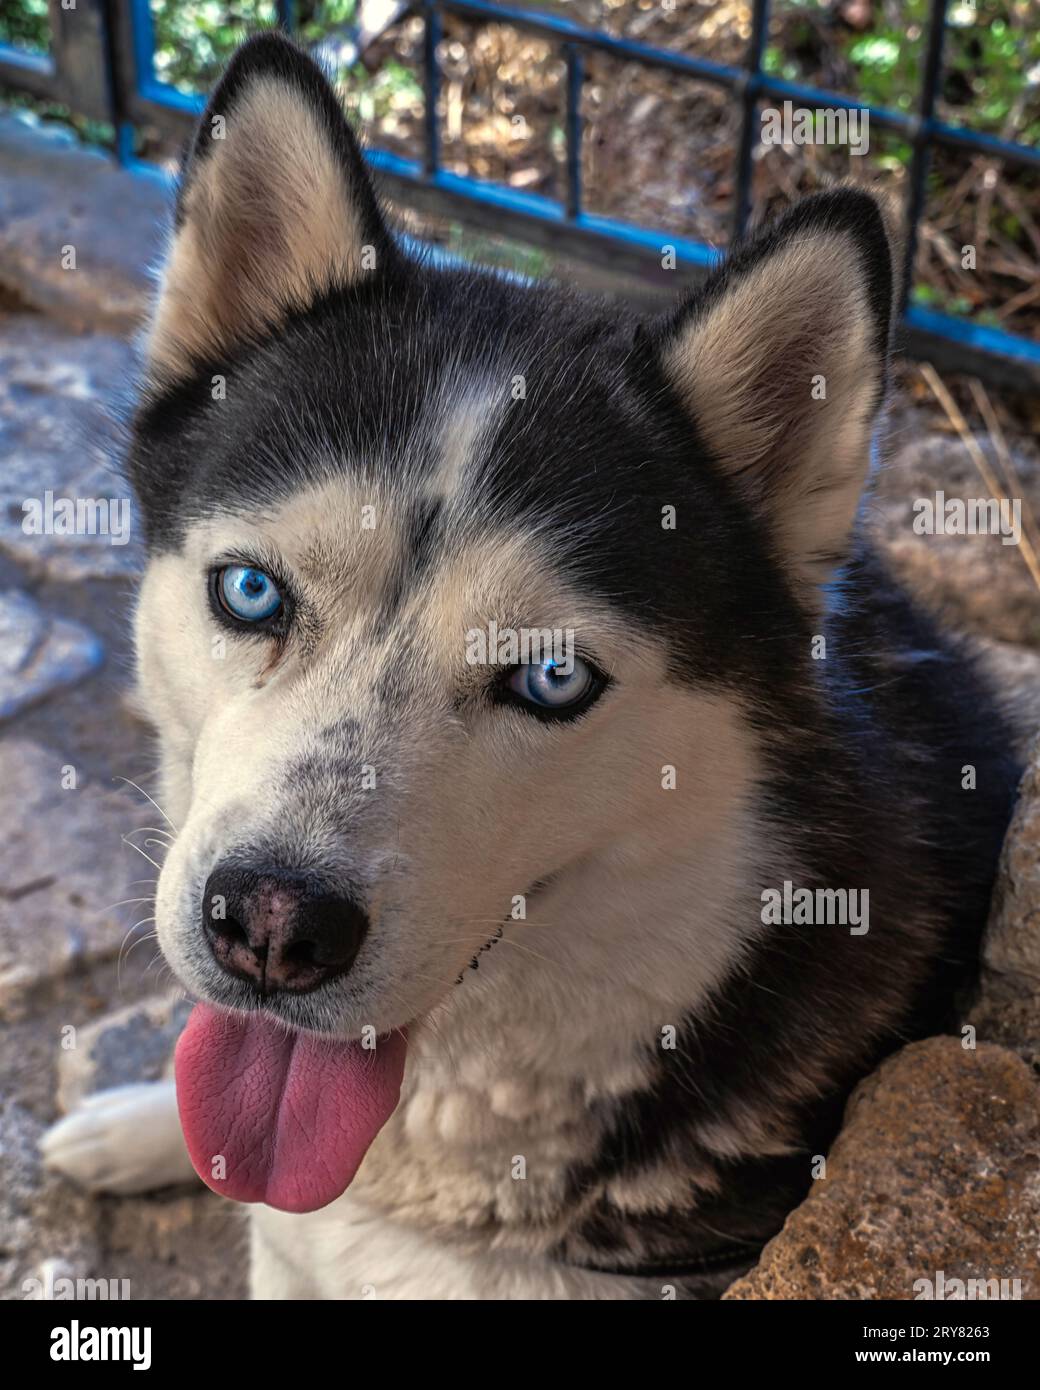 Ritratto di Husky siberiano con occhi blu e pelliccia bianca e nera. Nato come cane da lavoro, è attualmente tra i cani da compagnia più popolari. Foto Stock